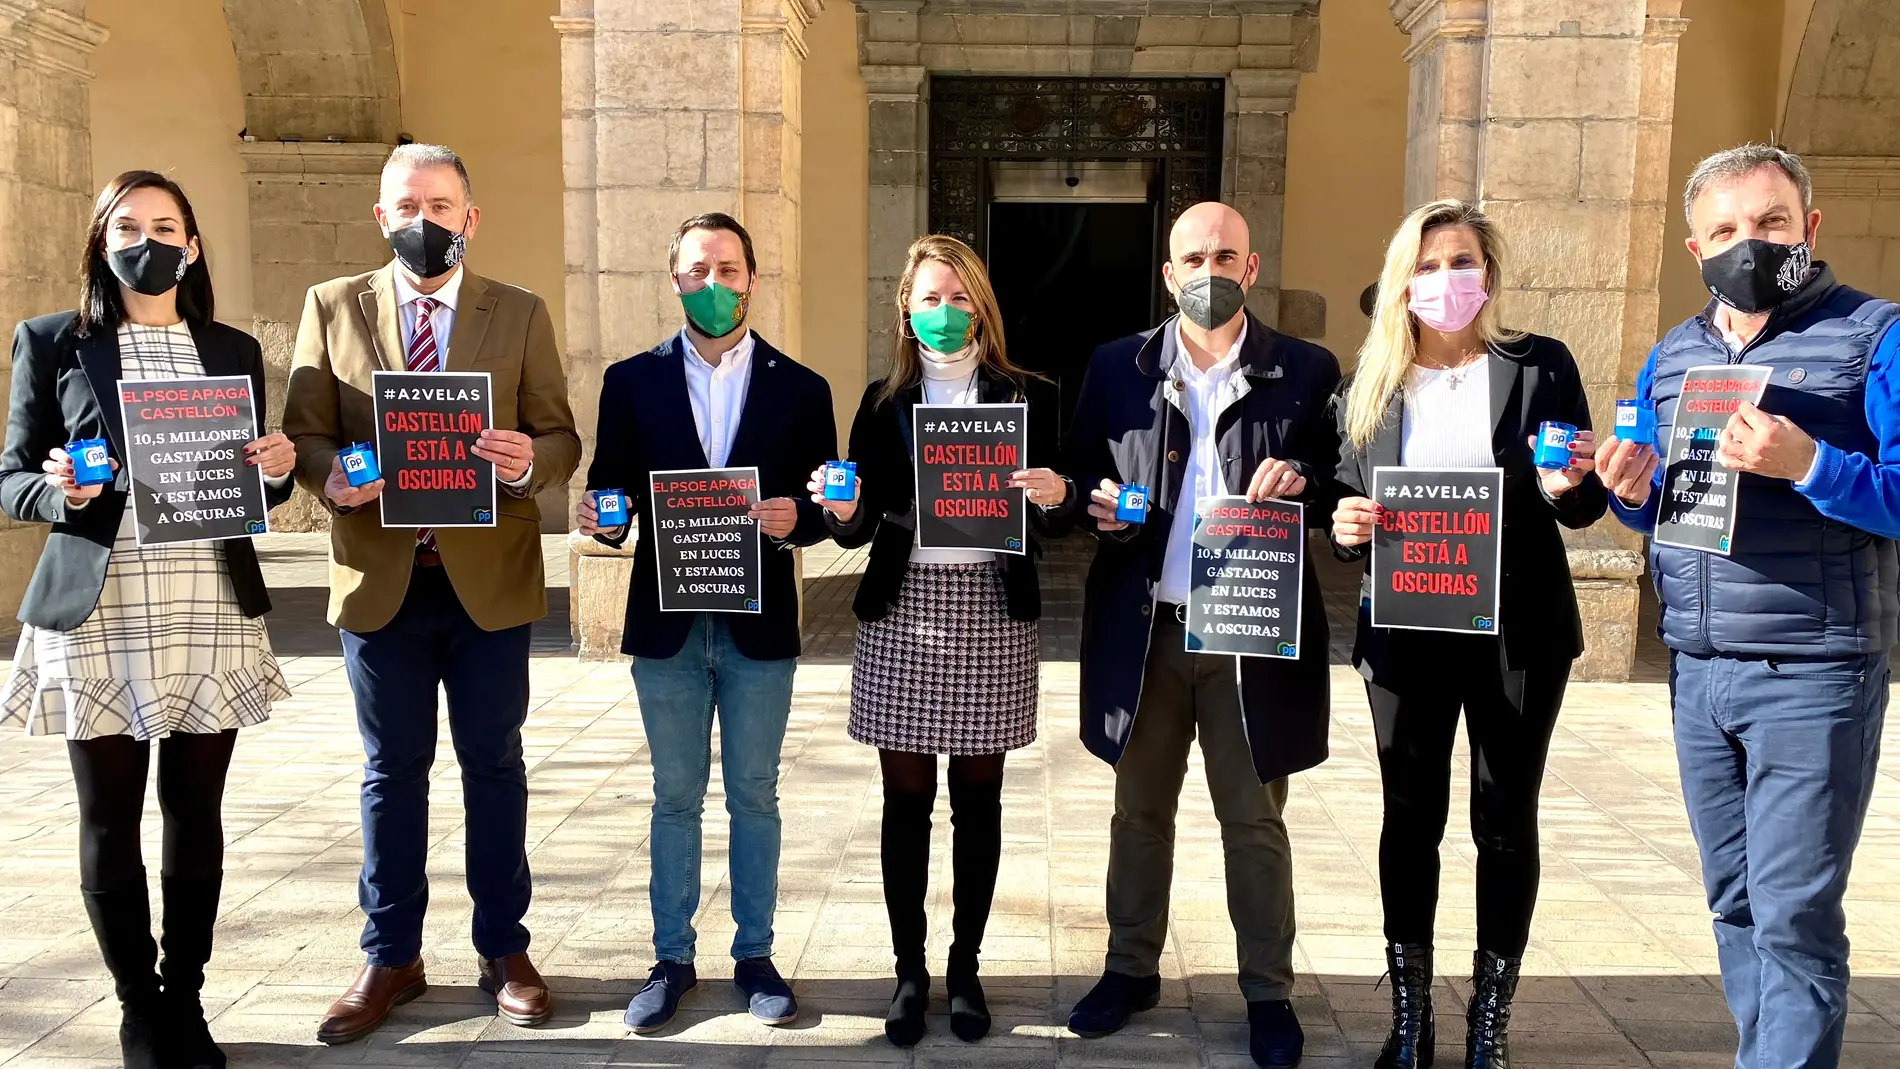 El PP insiste con la falta de luz en Castelló con la campaña #A2Velas 